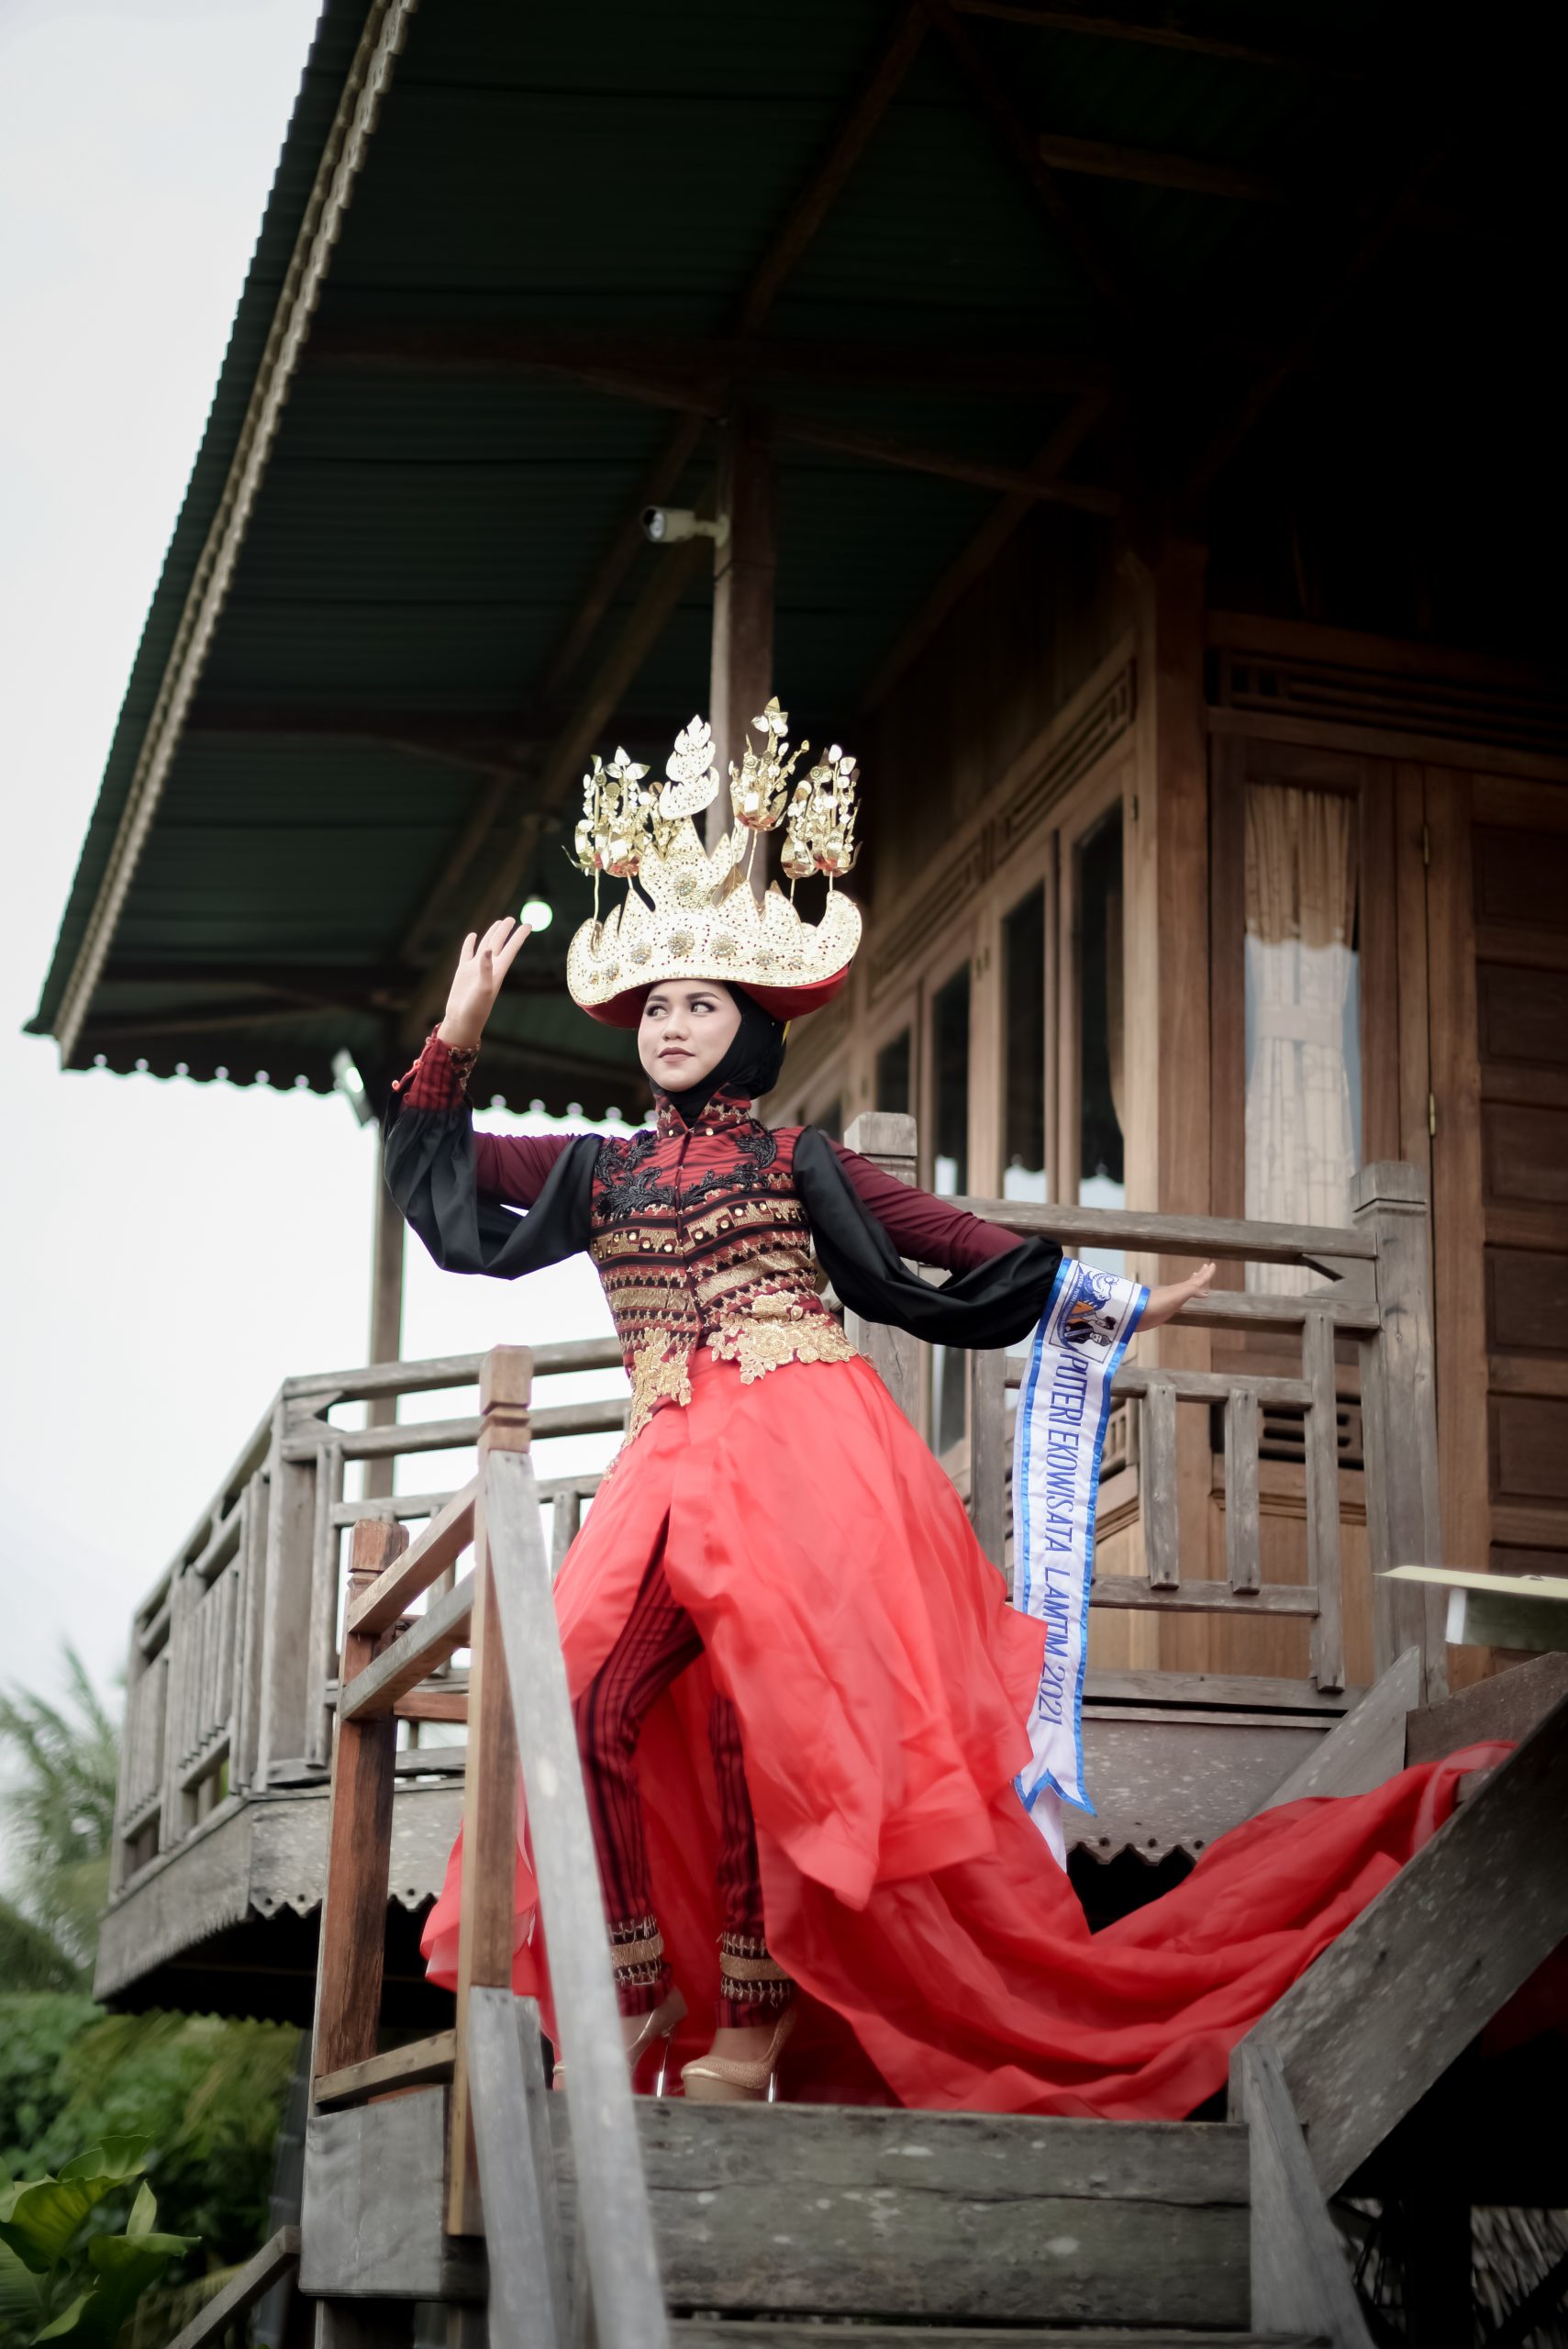 Siswa SMK Perintis Adiluhur Jabung Berhasil Raih Top 6 Puteri Ekowisata Lampung 2021 dan Best In Traditional Costume